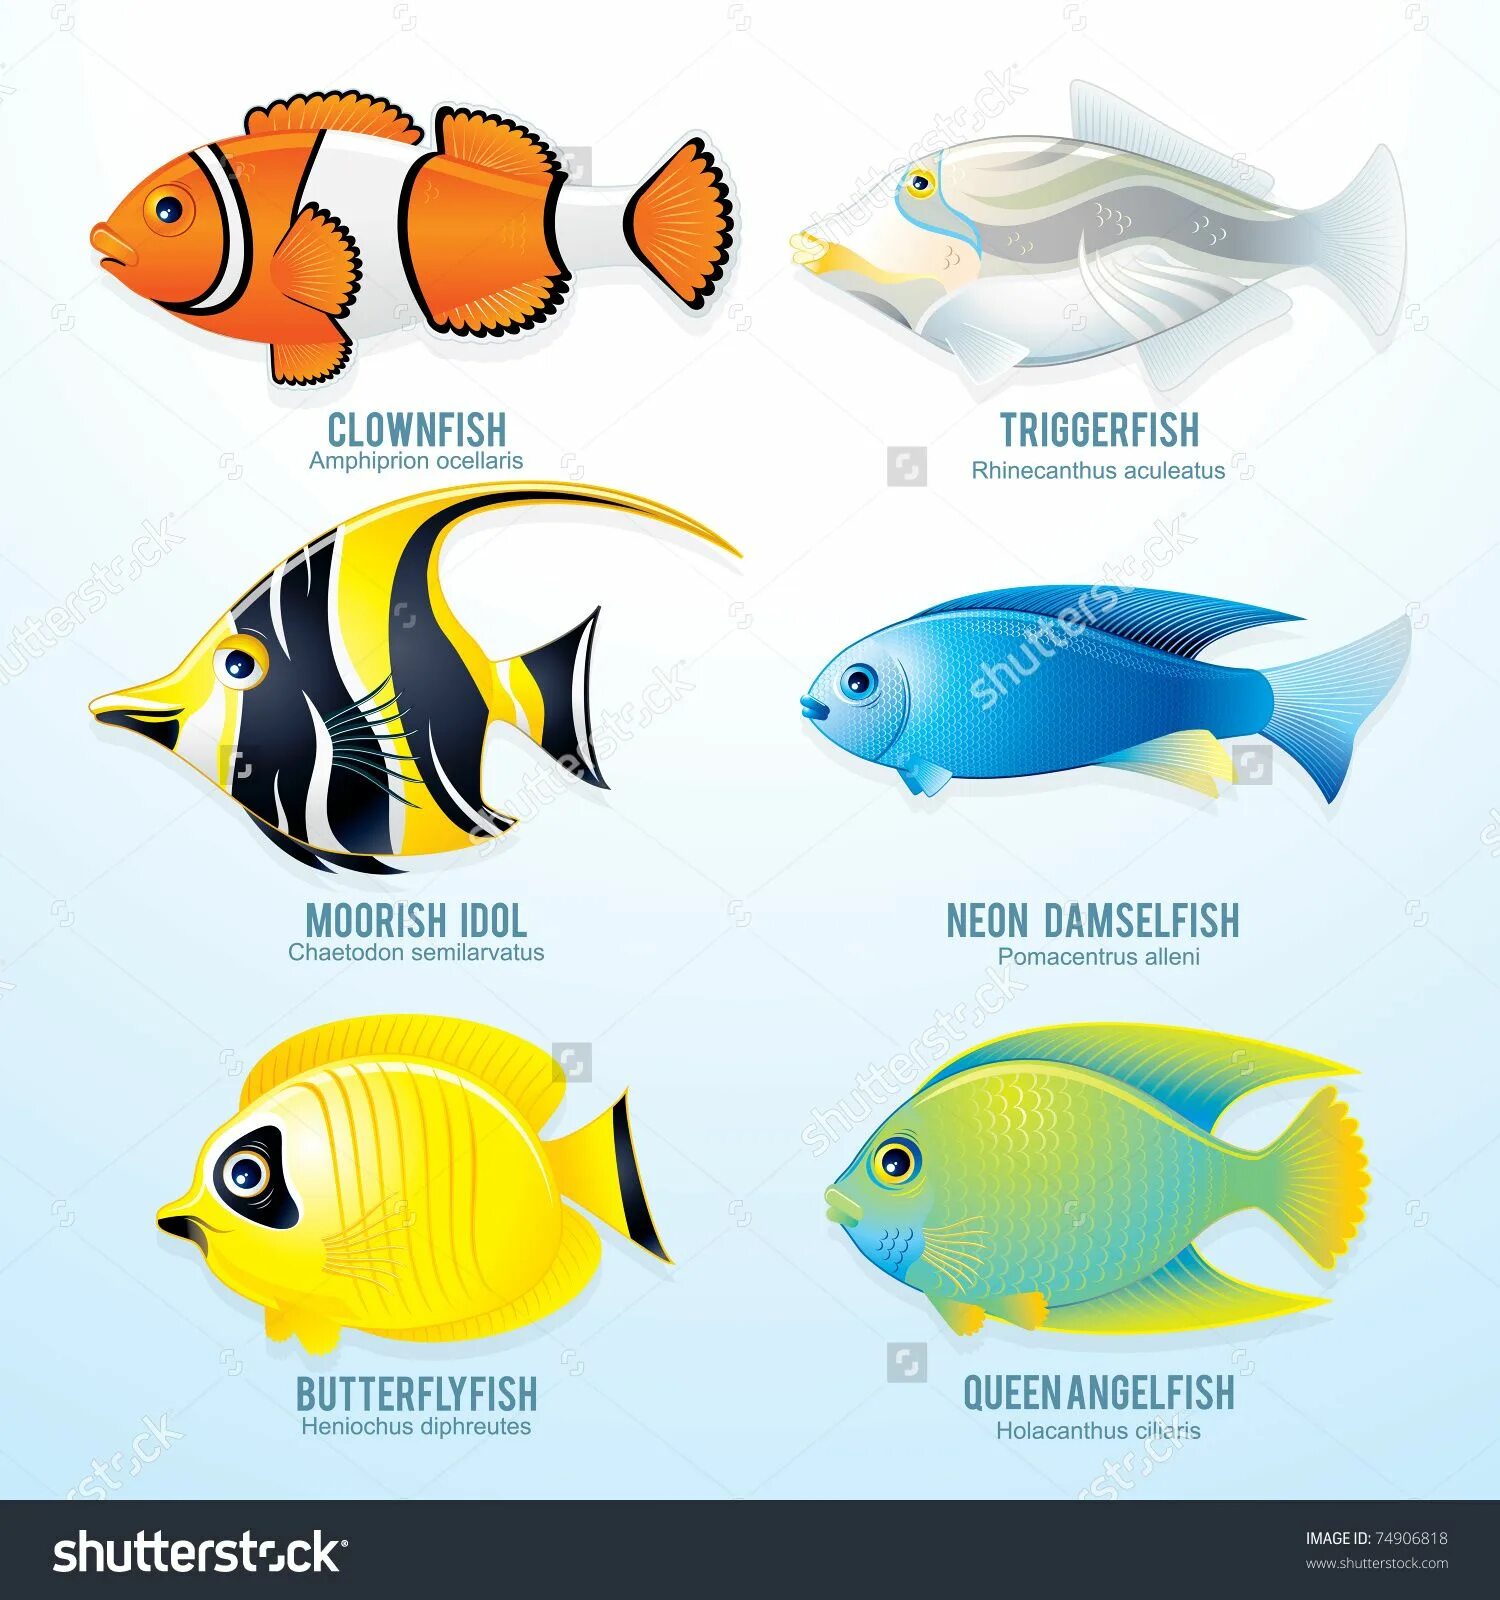 Аквариумные рыбки для детей. Морские рыбы для дошкольников. Аквариумные рыбки с названиями для детей. Цветные рыбки и их название.